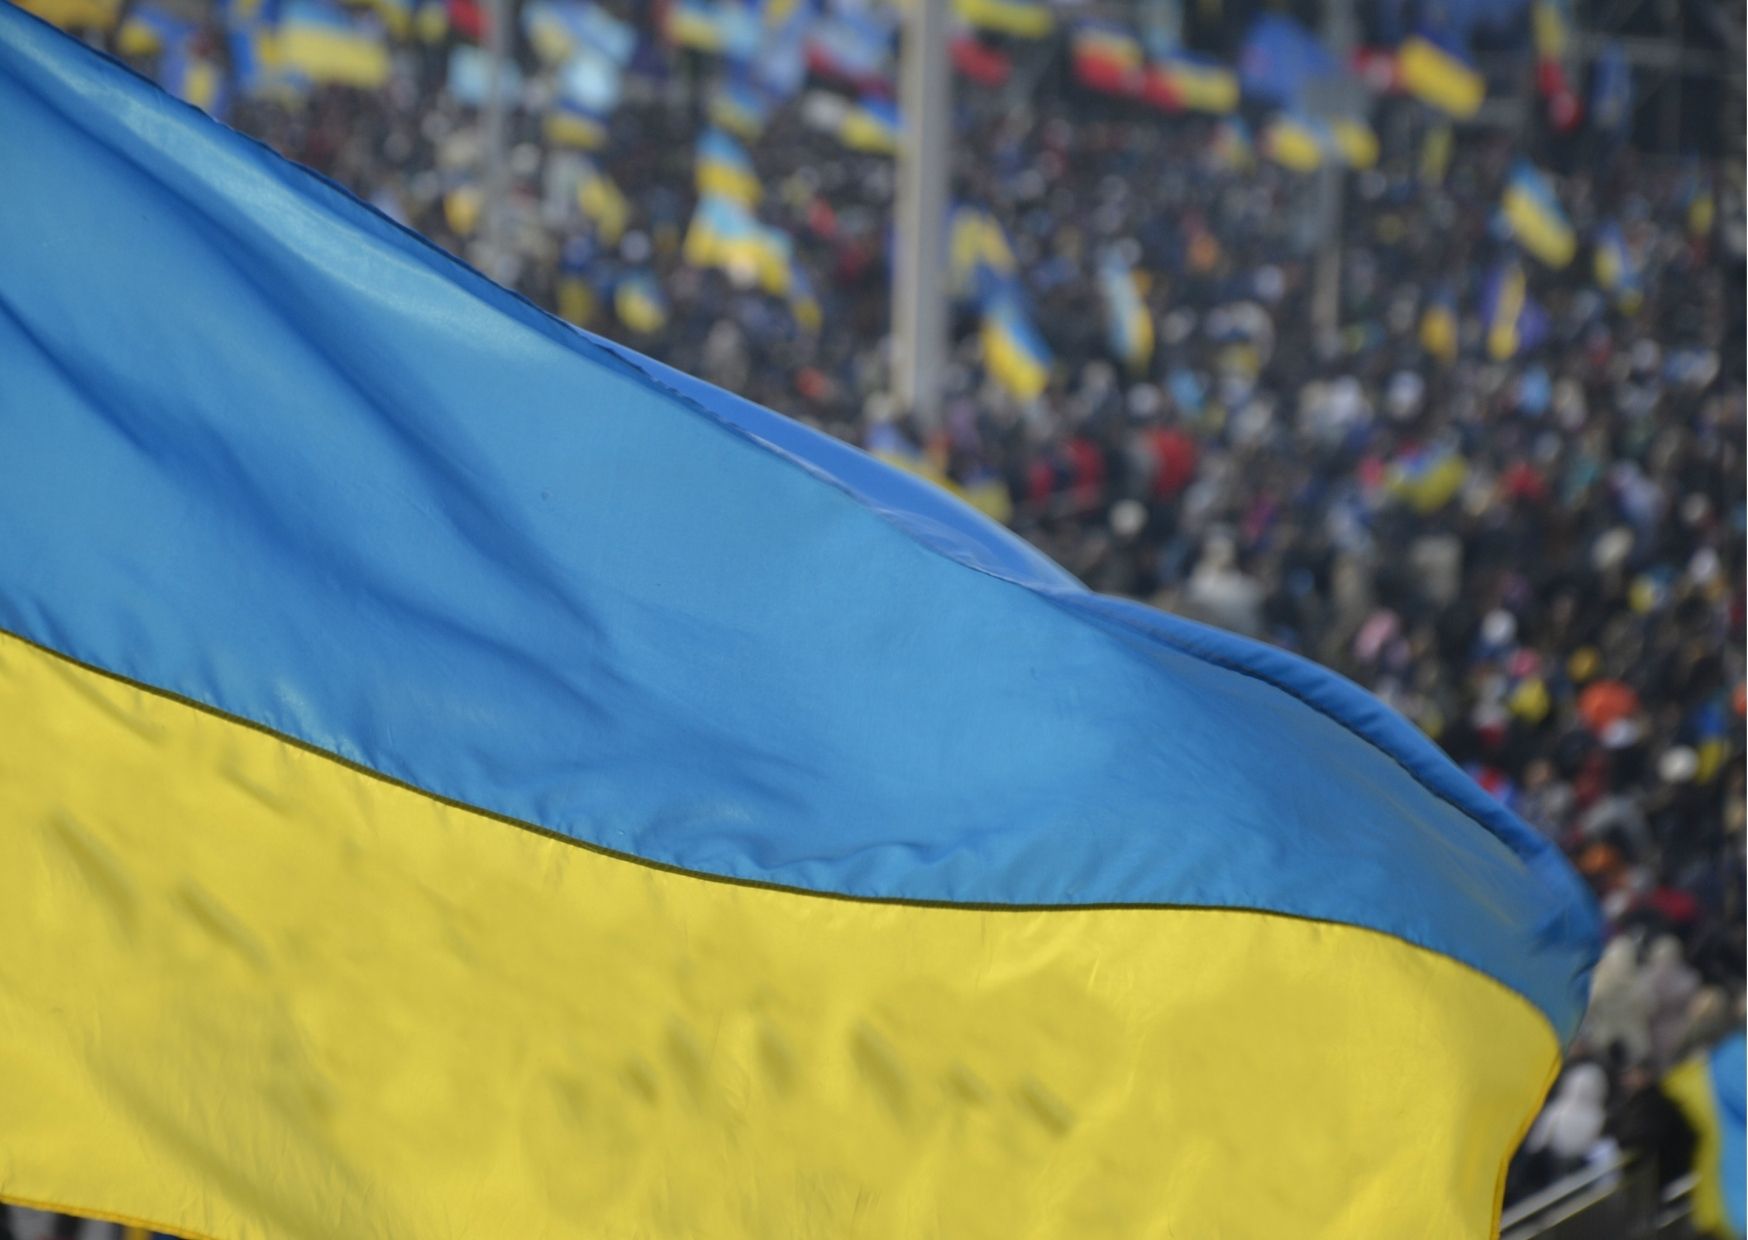 Bezpłatny portal prawny dla osób uciekających z Ukrainy